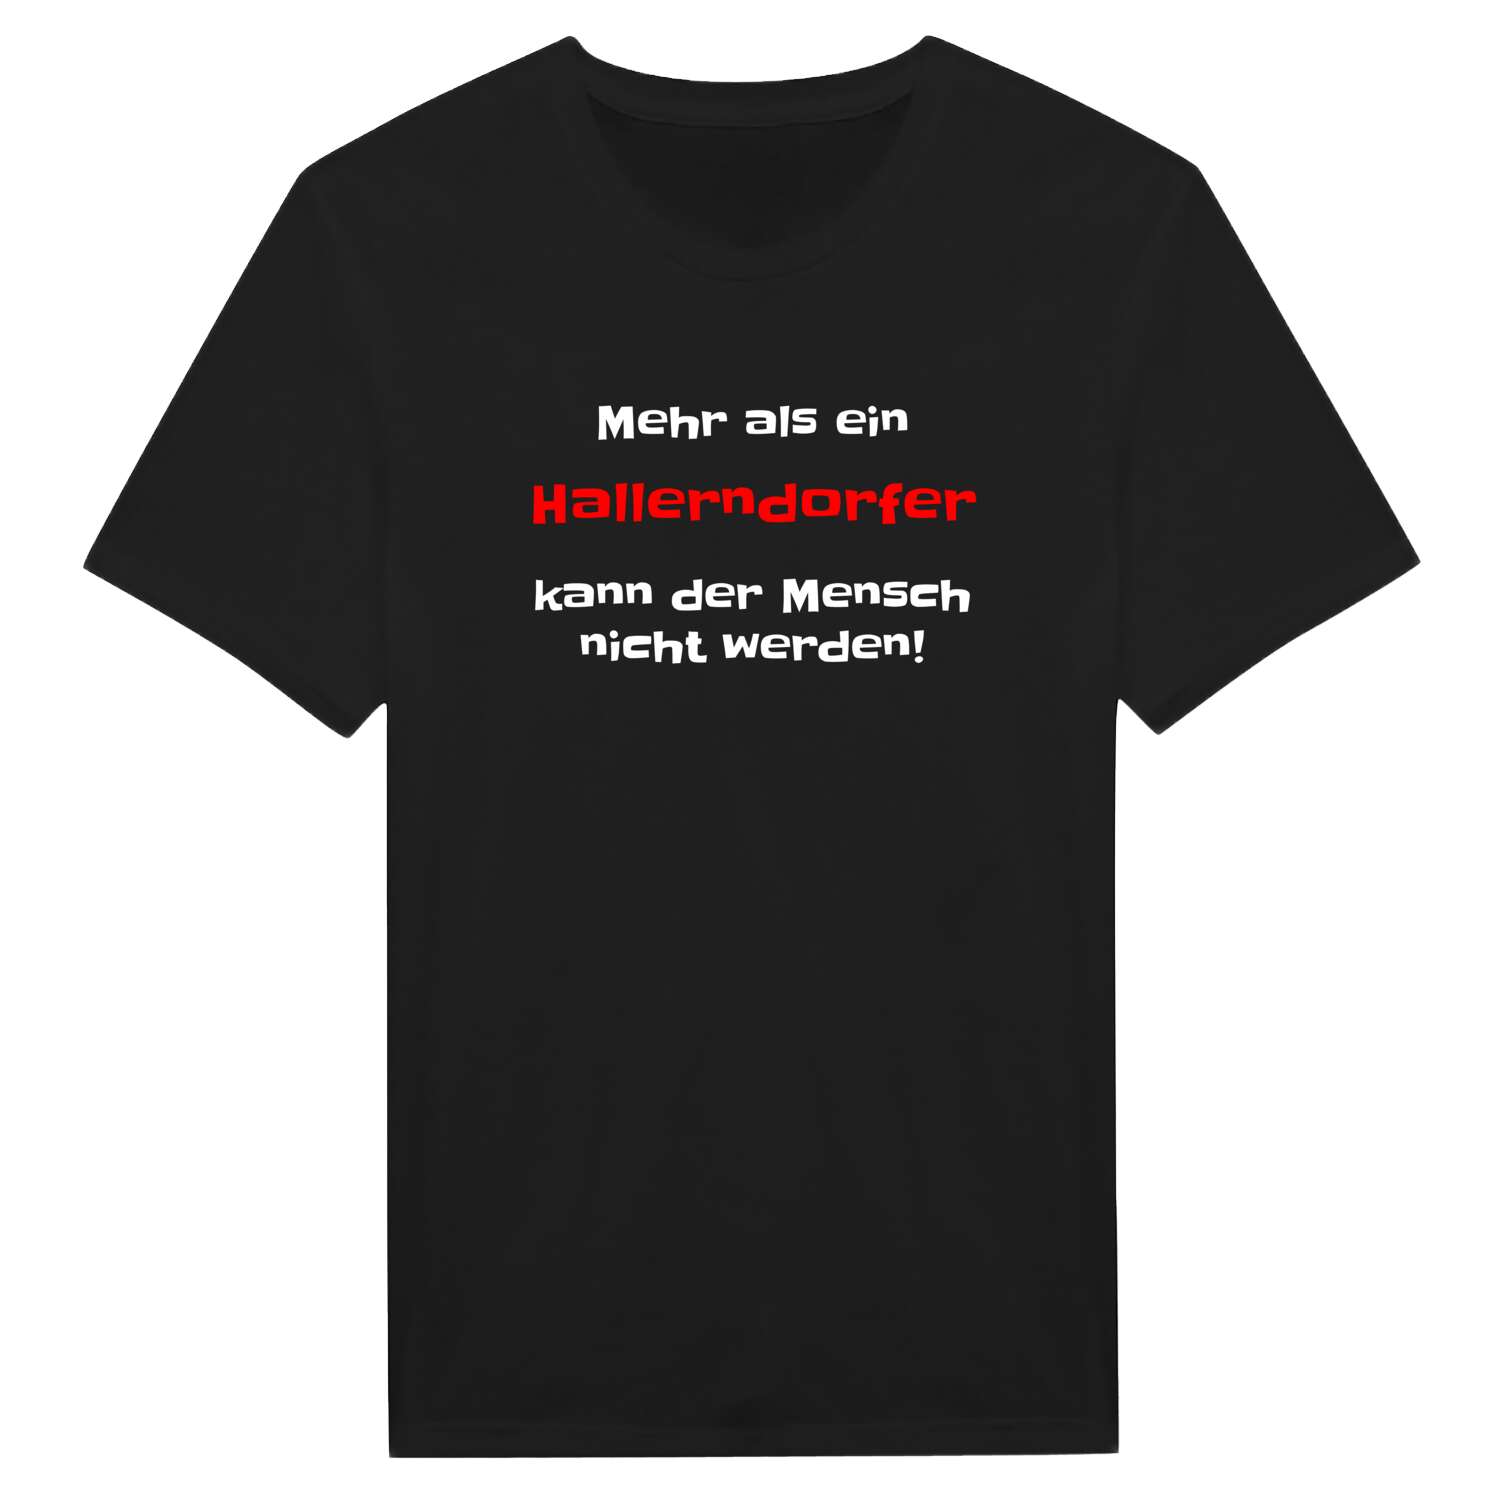 Hallerndorf T-Shirt »Mehr als ein«